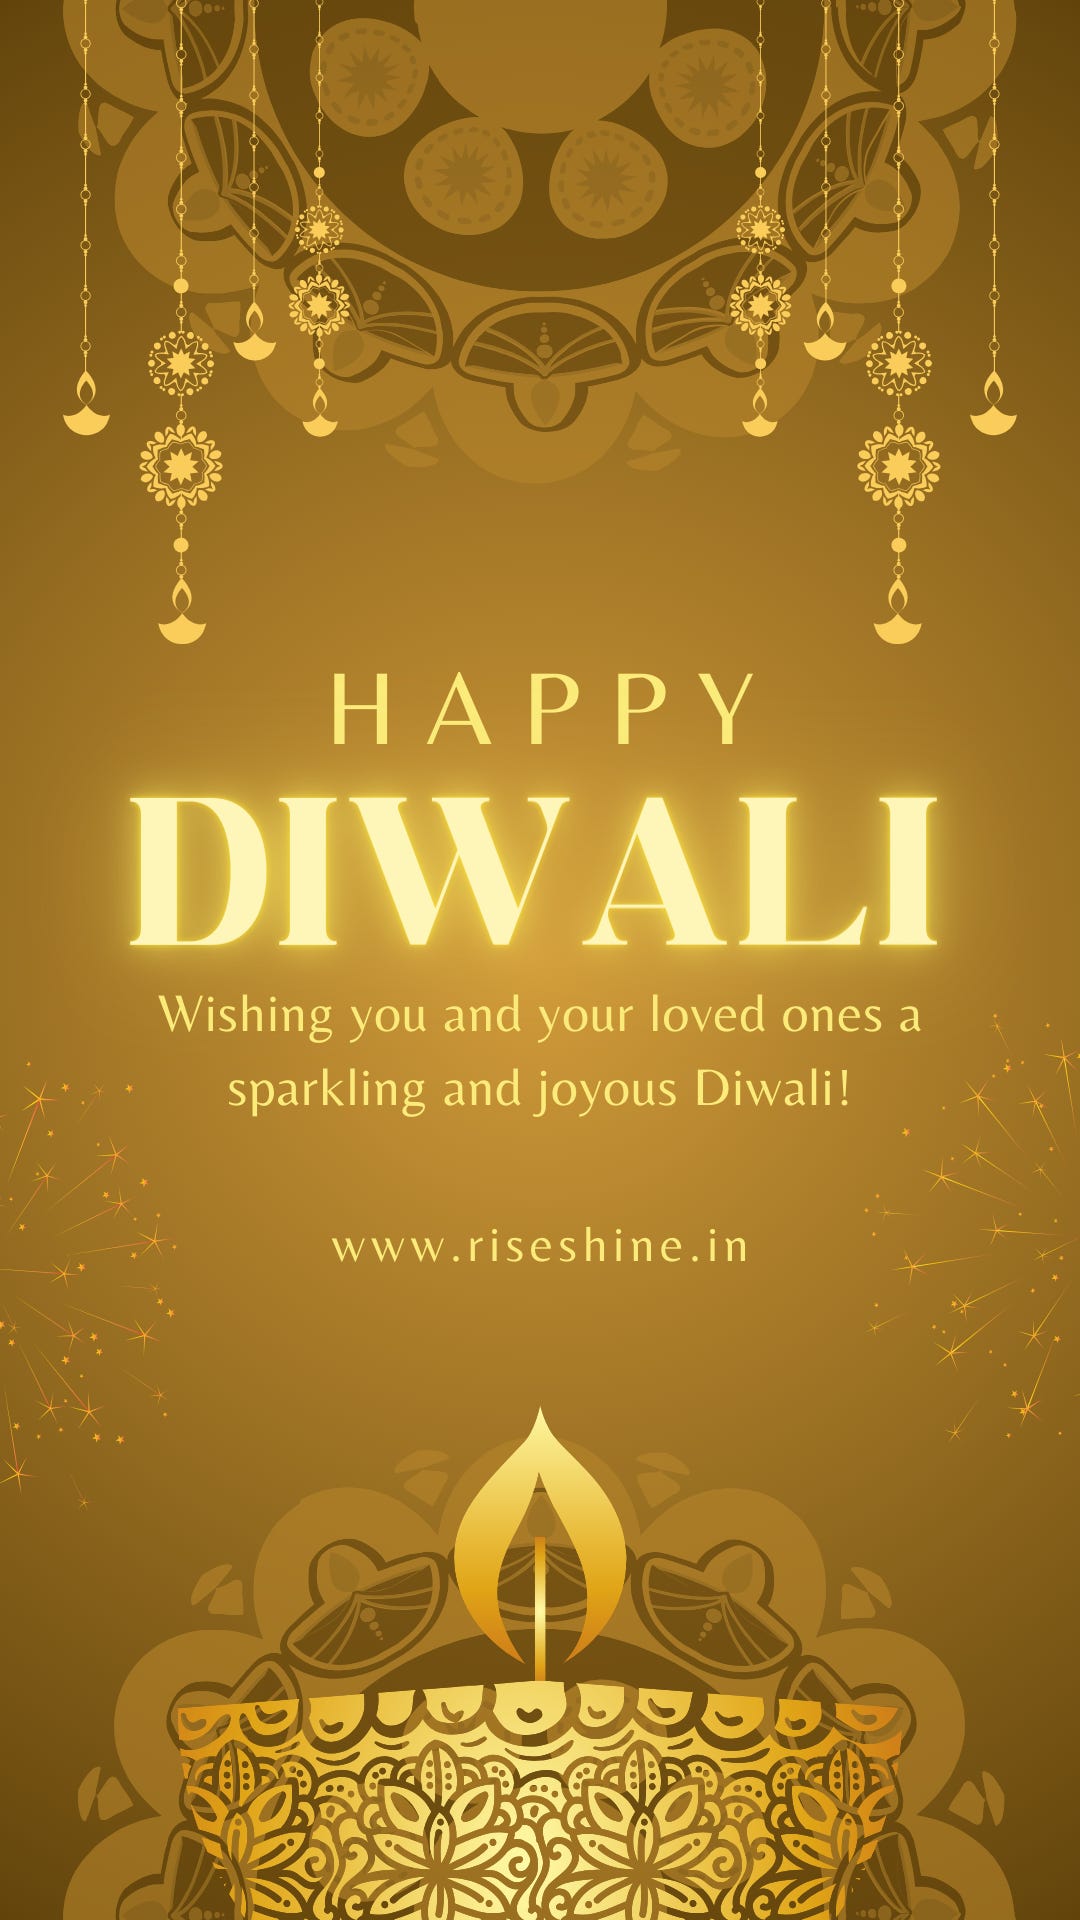 Happy Diwali - Insta/WhatsApp Story - www.riseshine.in